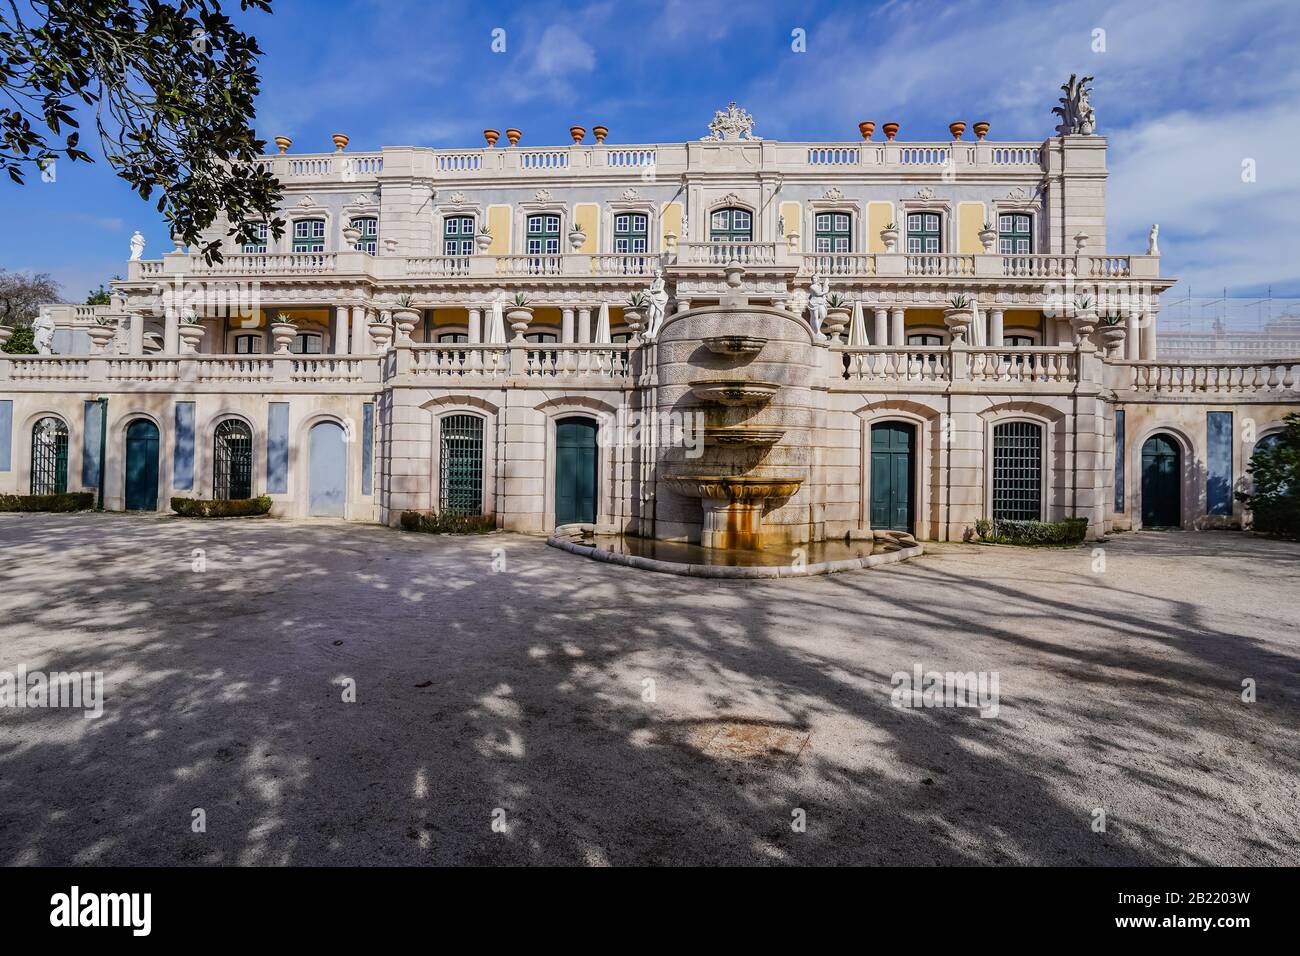 Le palais de Queluz est un palais portugais du XVIIIe siècle situé à Queluz, près de Lisbonne. Il fut architecte par Mateus Vicente de Oliveira vers 1747 an Banque D'Images